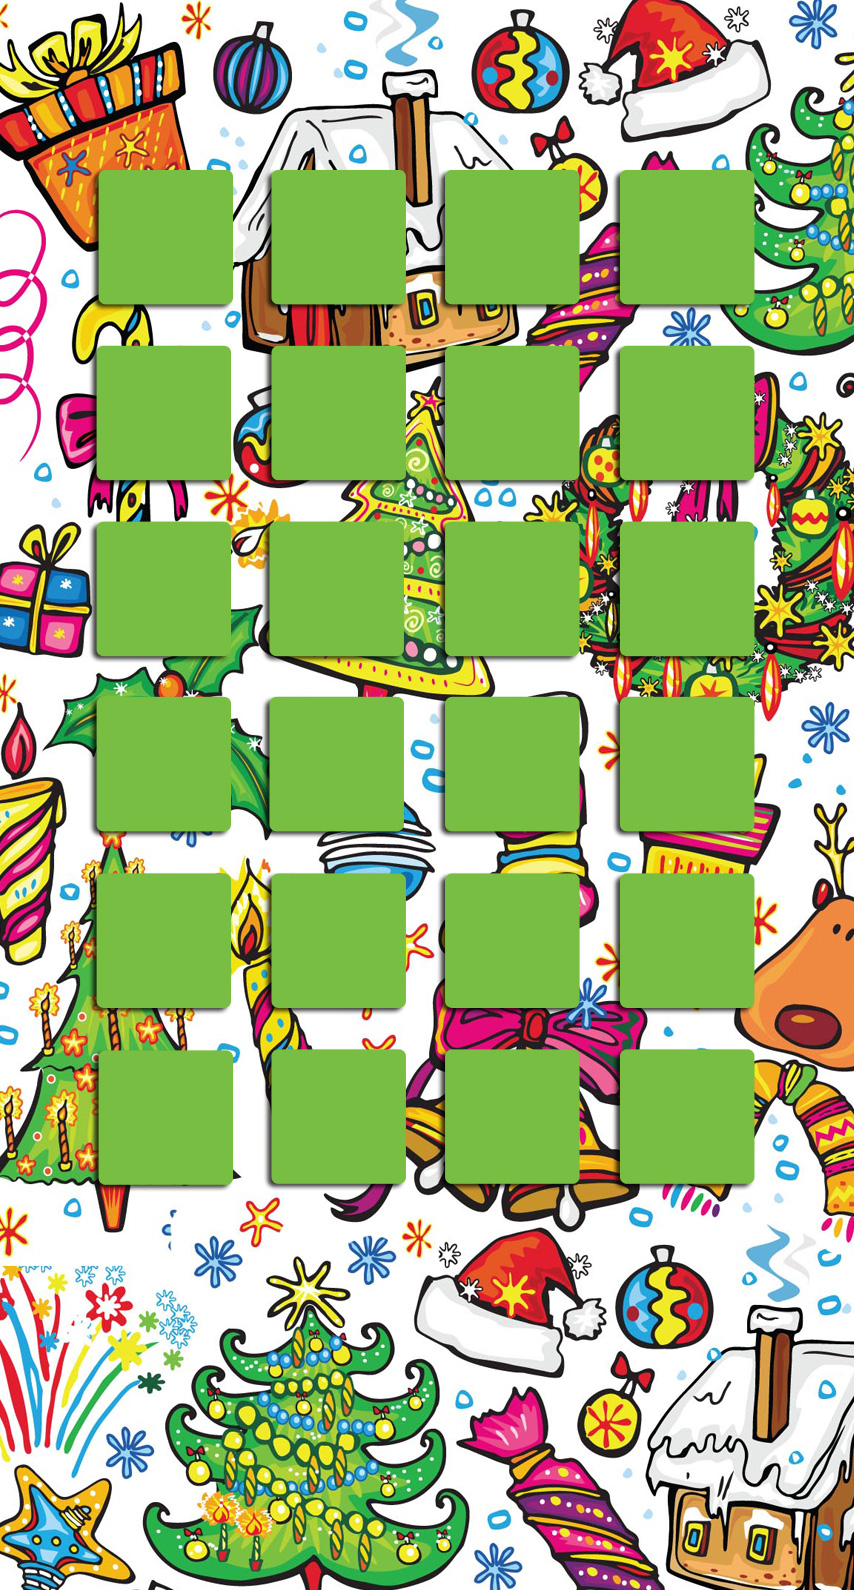 棚クリスマスツリーカラフル緑女子向け Wallpaper Sc Iphone6s壁紙